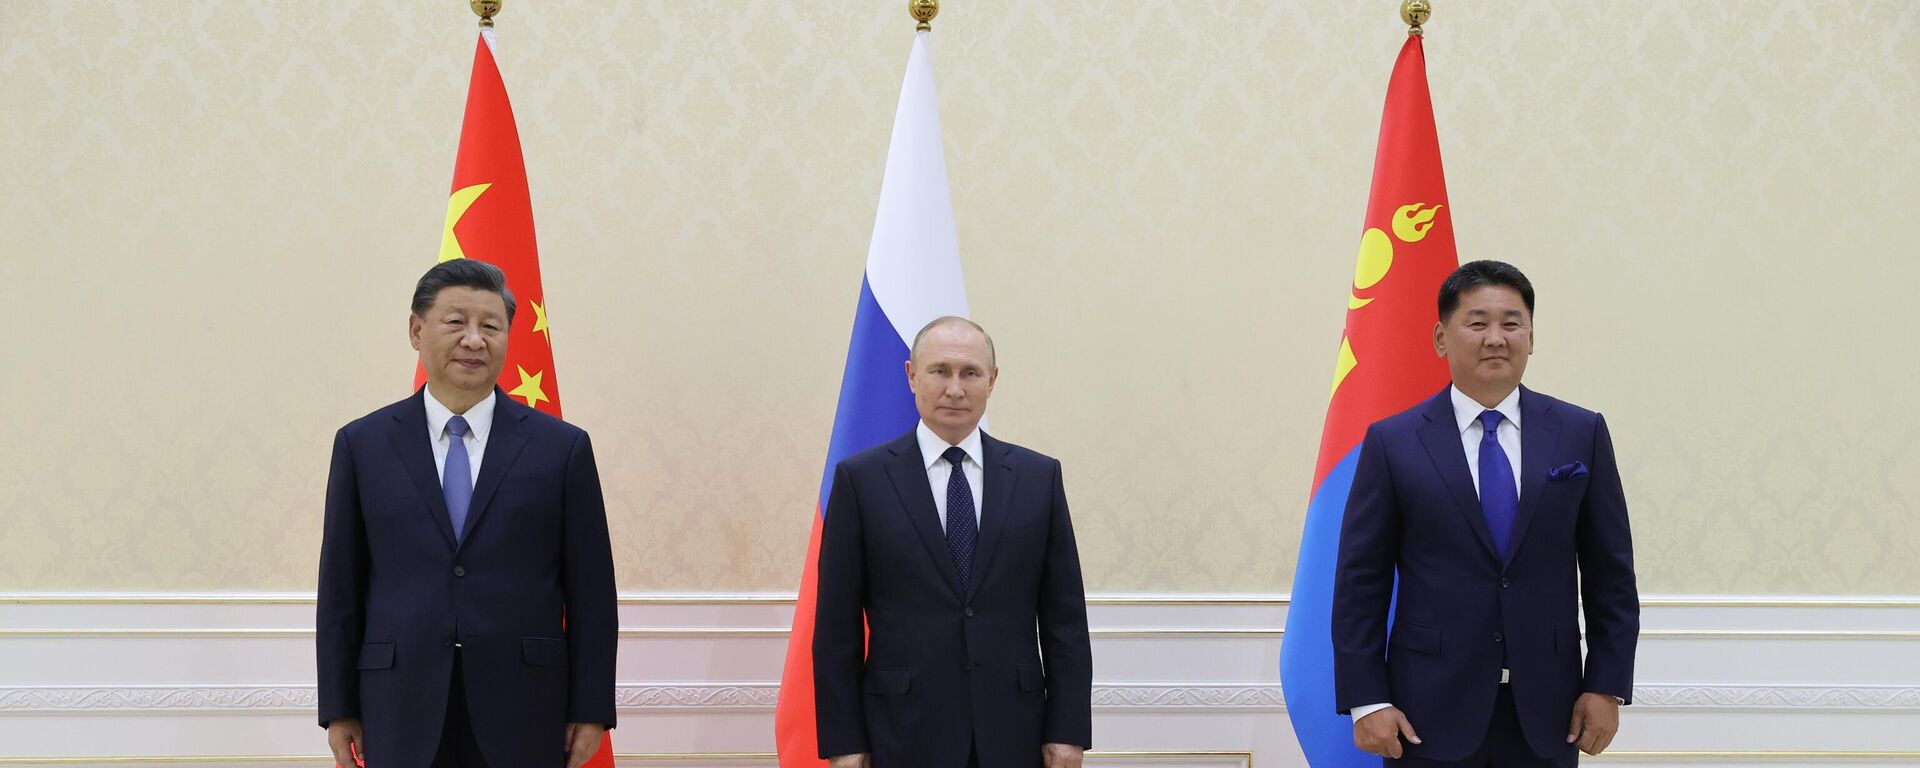 Da esquerda para a direita, o presidente da China, Xi Jinping, o presidente da Rússia, Vladimir Putin, e o presidente da Mongólia, Ukhnaagiin Khurelsukh, durante reunião trilateral durante a cúpula da Organização de Cooperação de Xangai (SCO, na sigla em inglês) em Samarcanda, no Uzbequistão, em 15 de setembro de 2022 - Sputnik Brasil, 1920, 15.09.2022